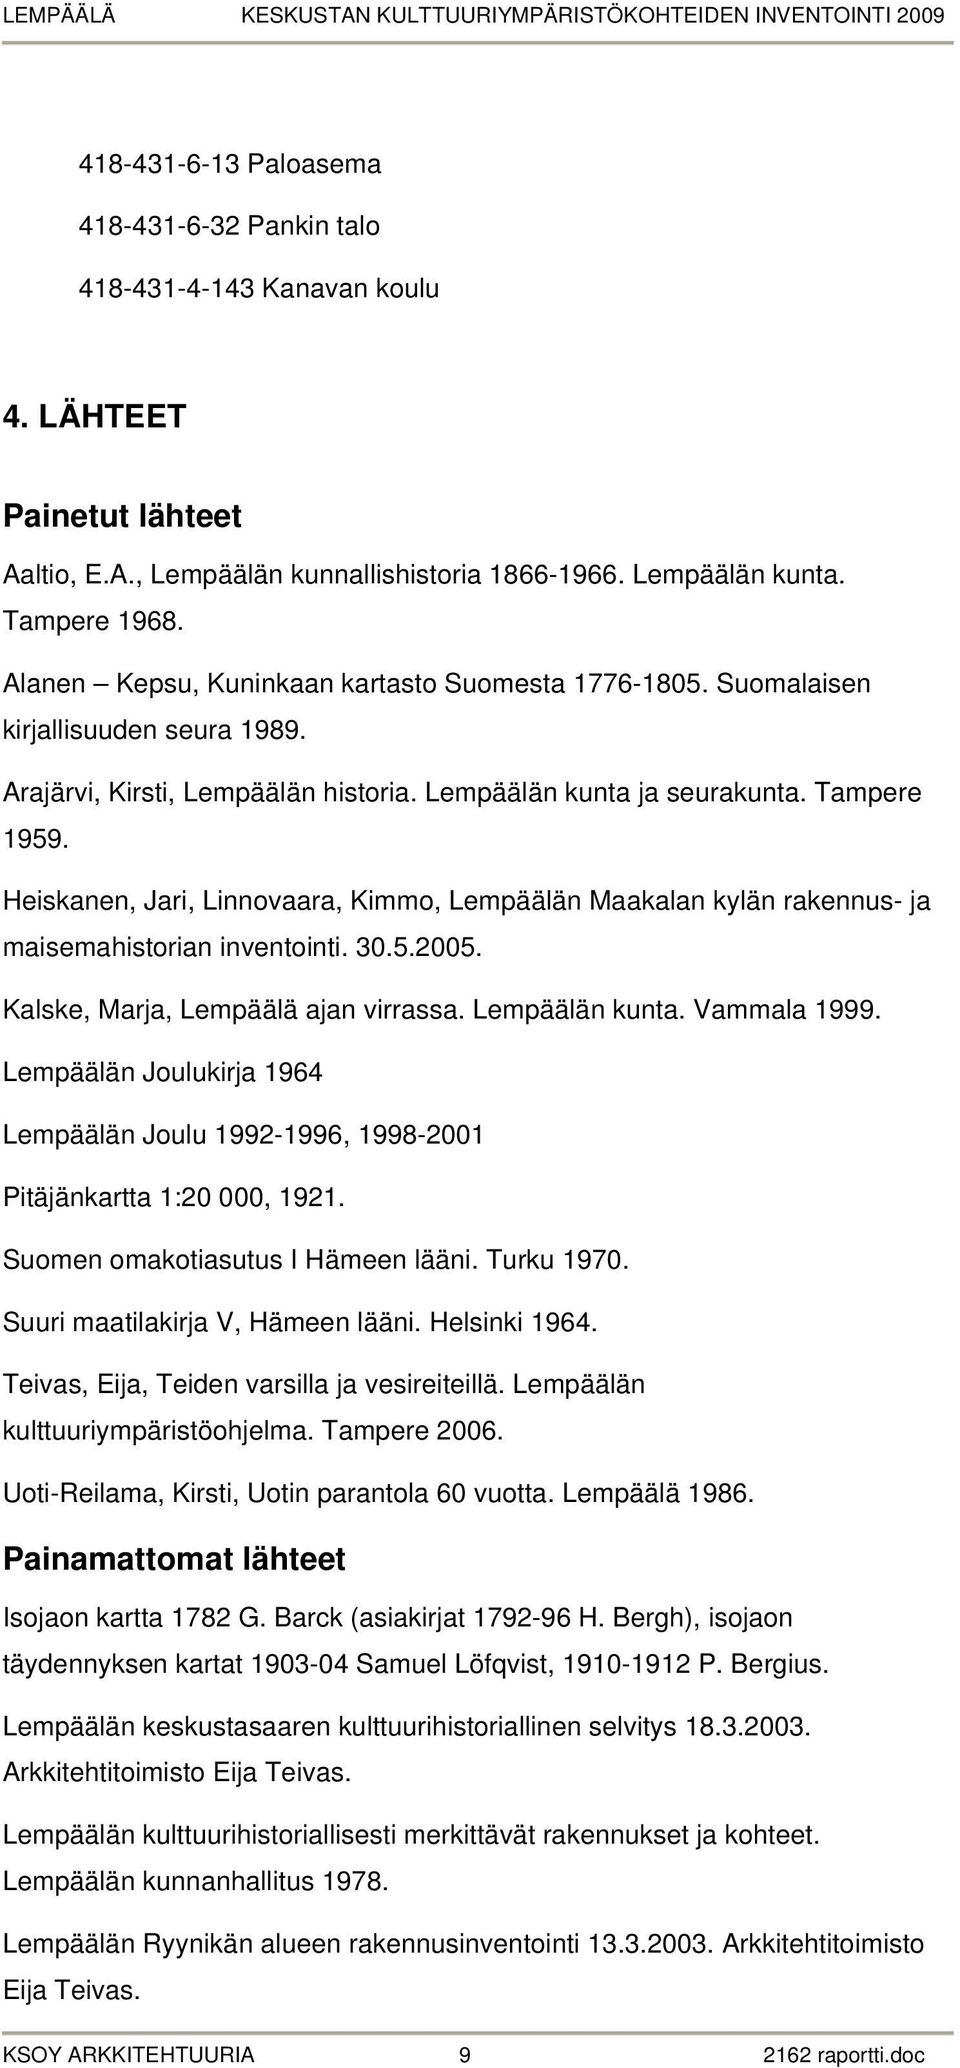 Heiskanen, Jari, Linnovaara, Kimmo, Lempäälän Maakalan kylän rakennus- ja maisemahistorian inventointi. 30.5.2005. Kalske, Marja, Lempäälä ajan virrassa. Lempäälän kunta. Vammala 1999.